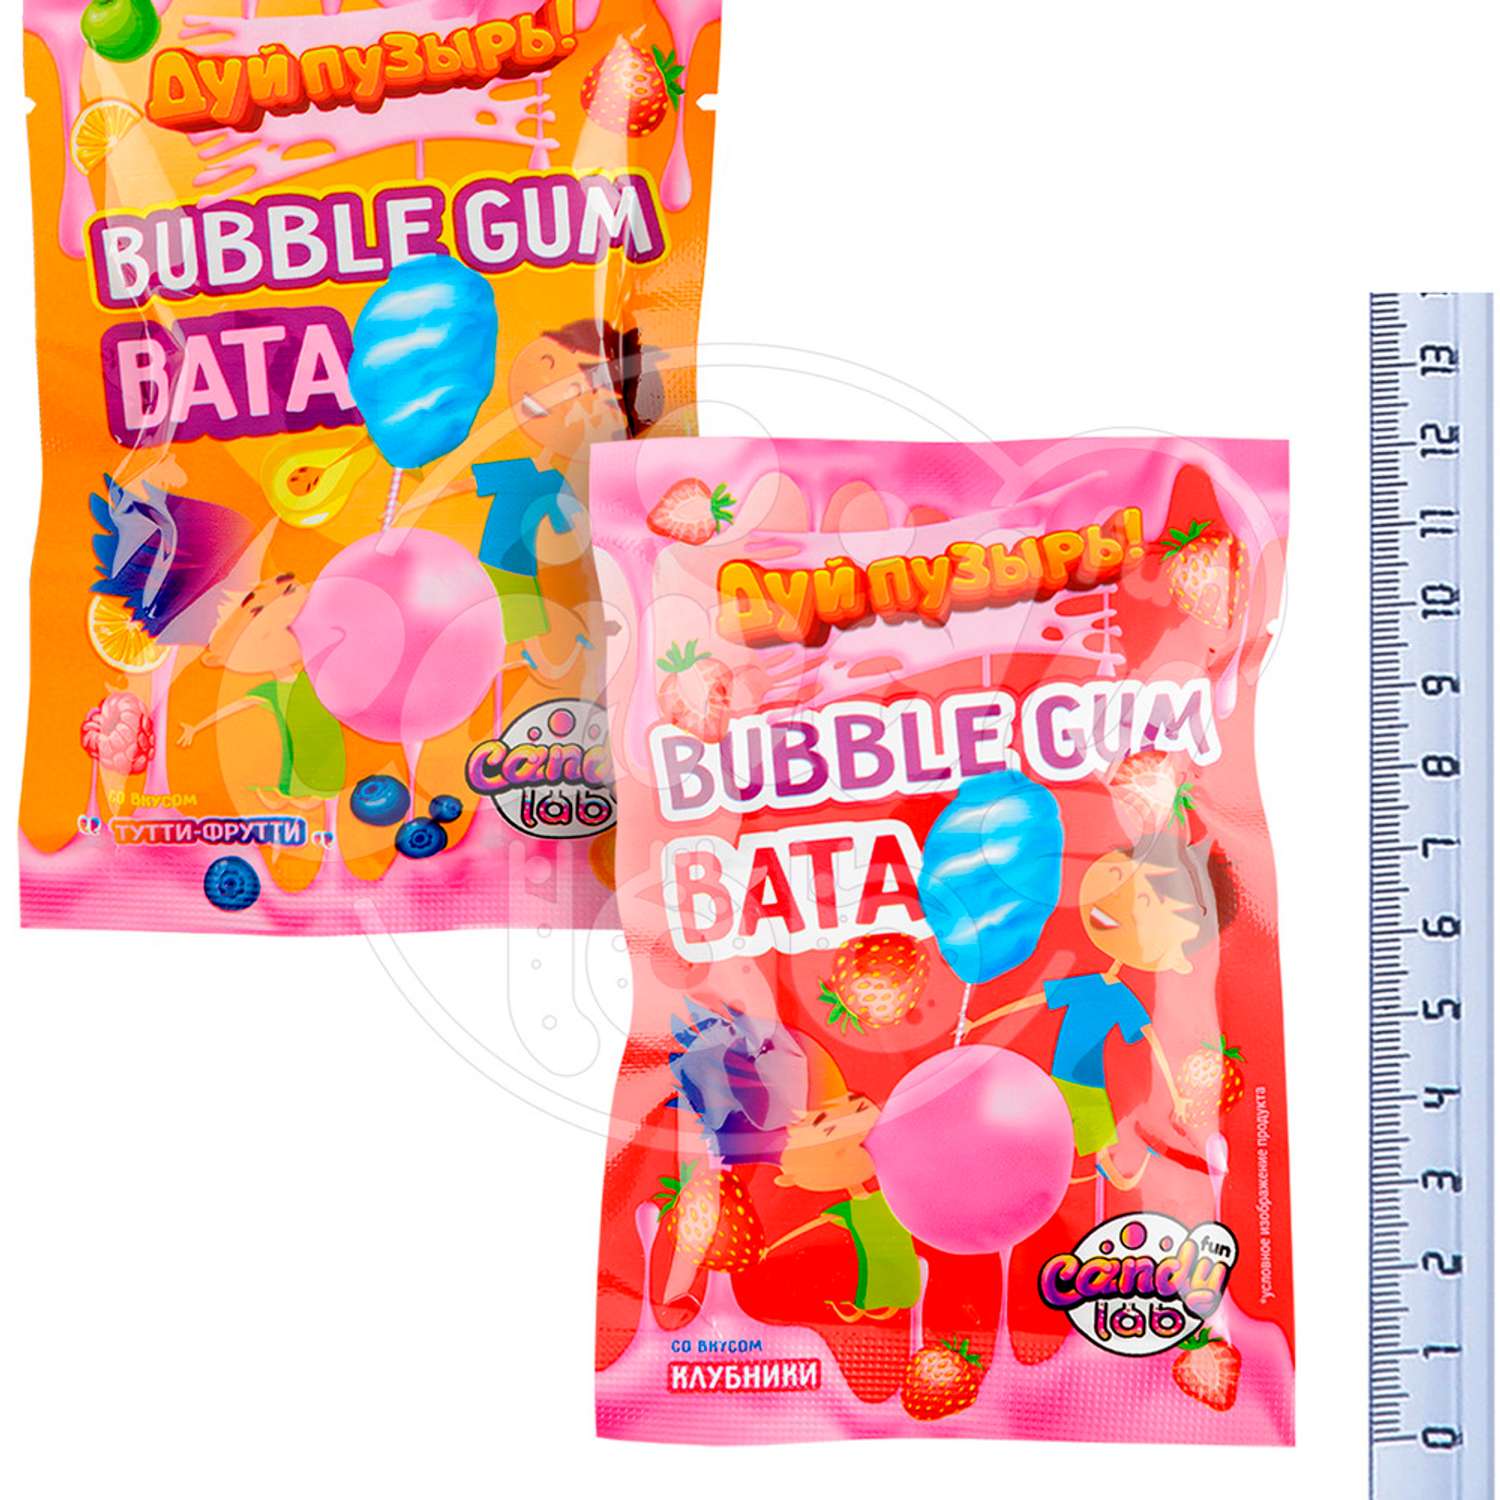 Жевательная резинка Fun Candy Lab ассорти вкусов Дуй пузырь! Bubble gum 24 шт по 5 грамм - фото 4